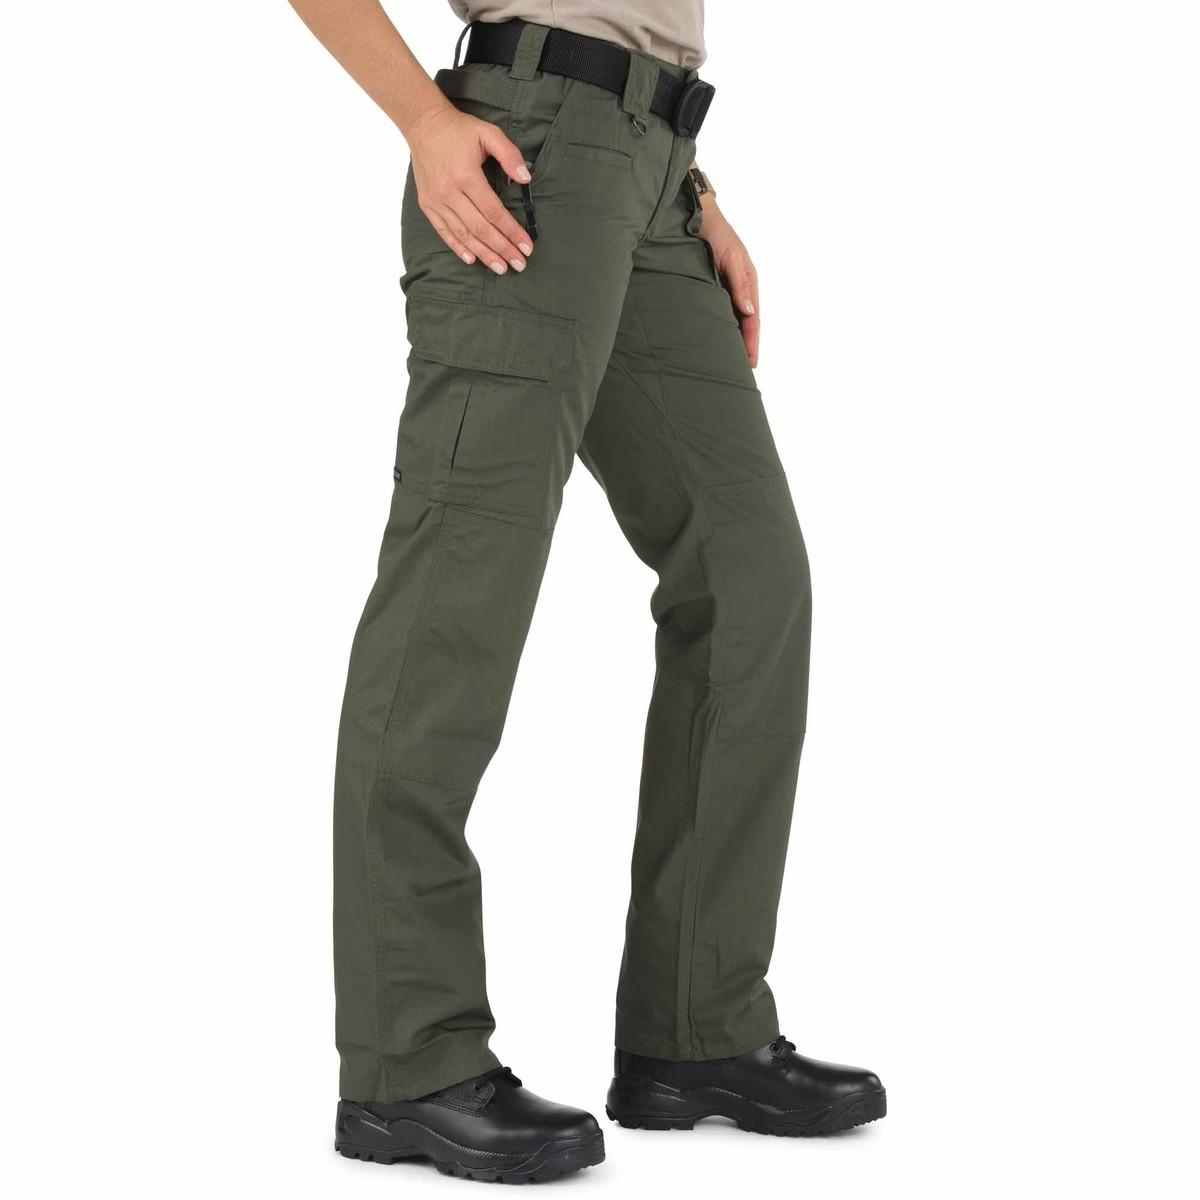 Tactical Uniform for Military, Law Enforcement | Buy 5.11 WOMEN'S ...